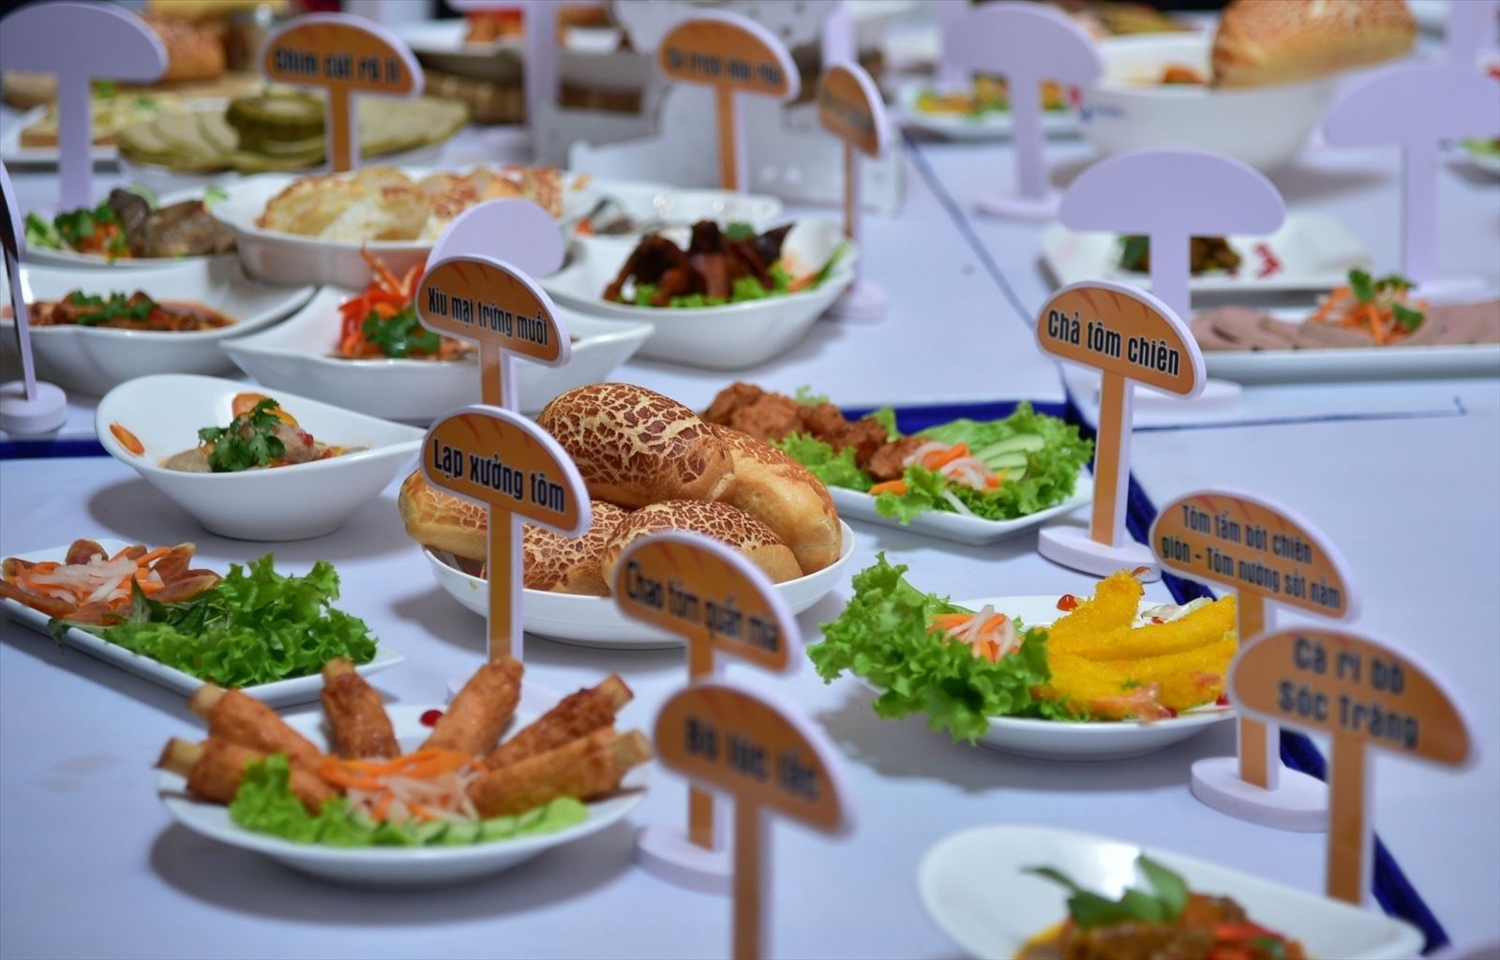 105 món ăn kèm với bánh mì được giới thiệu tại Lễ hội Bánh mì Việt Nam lần thứ nhất